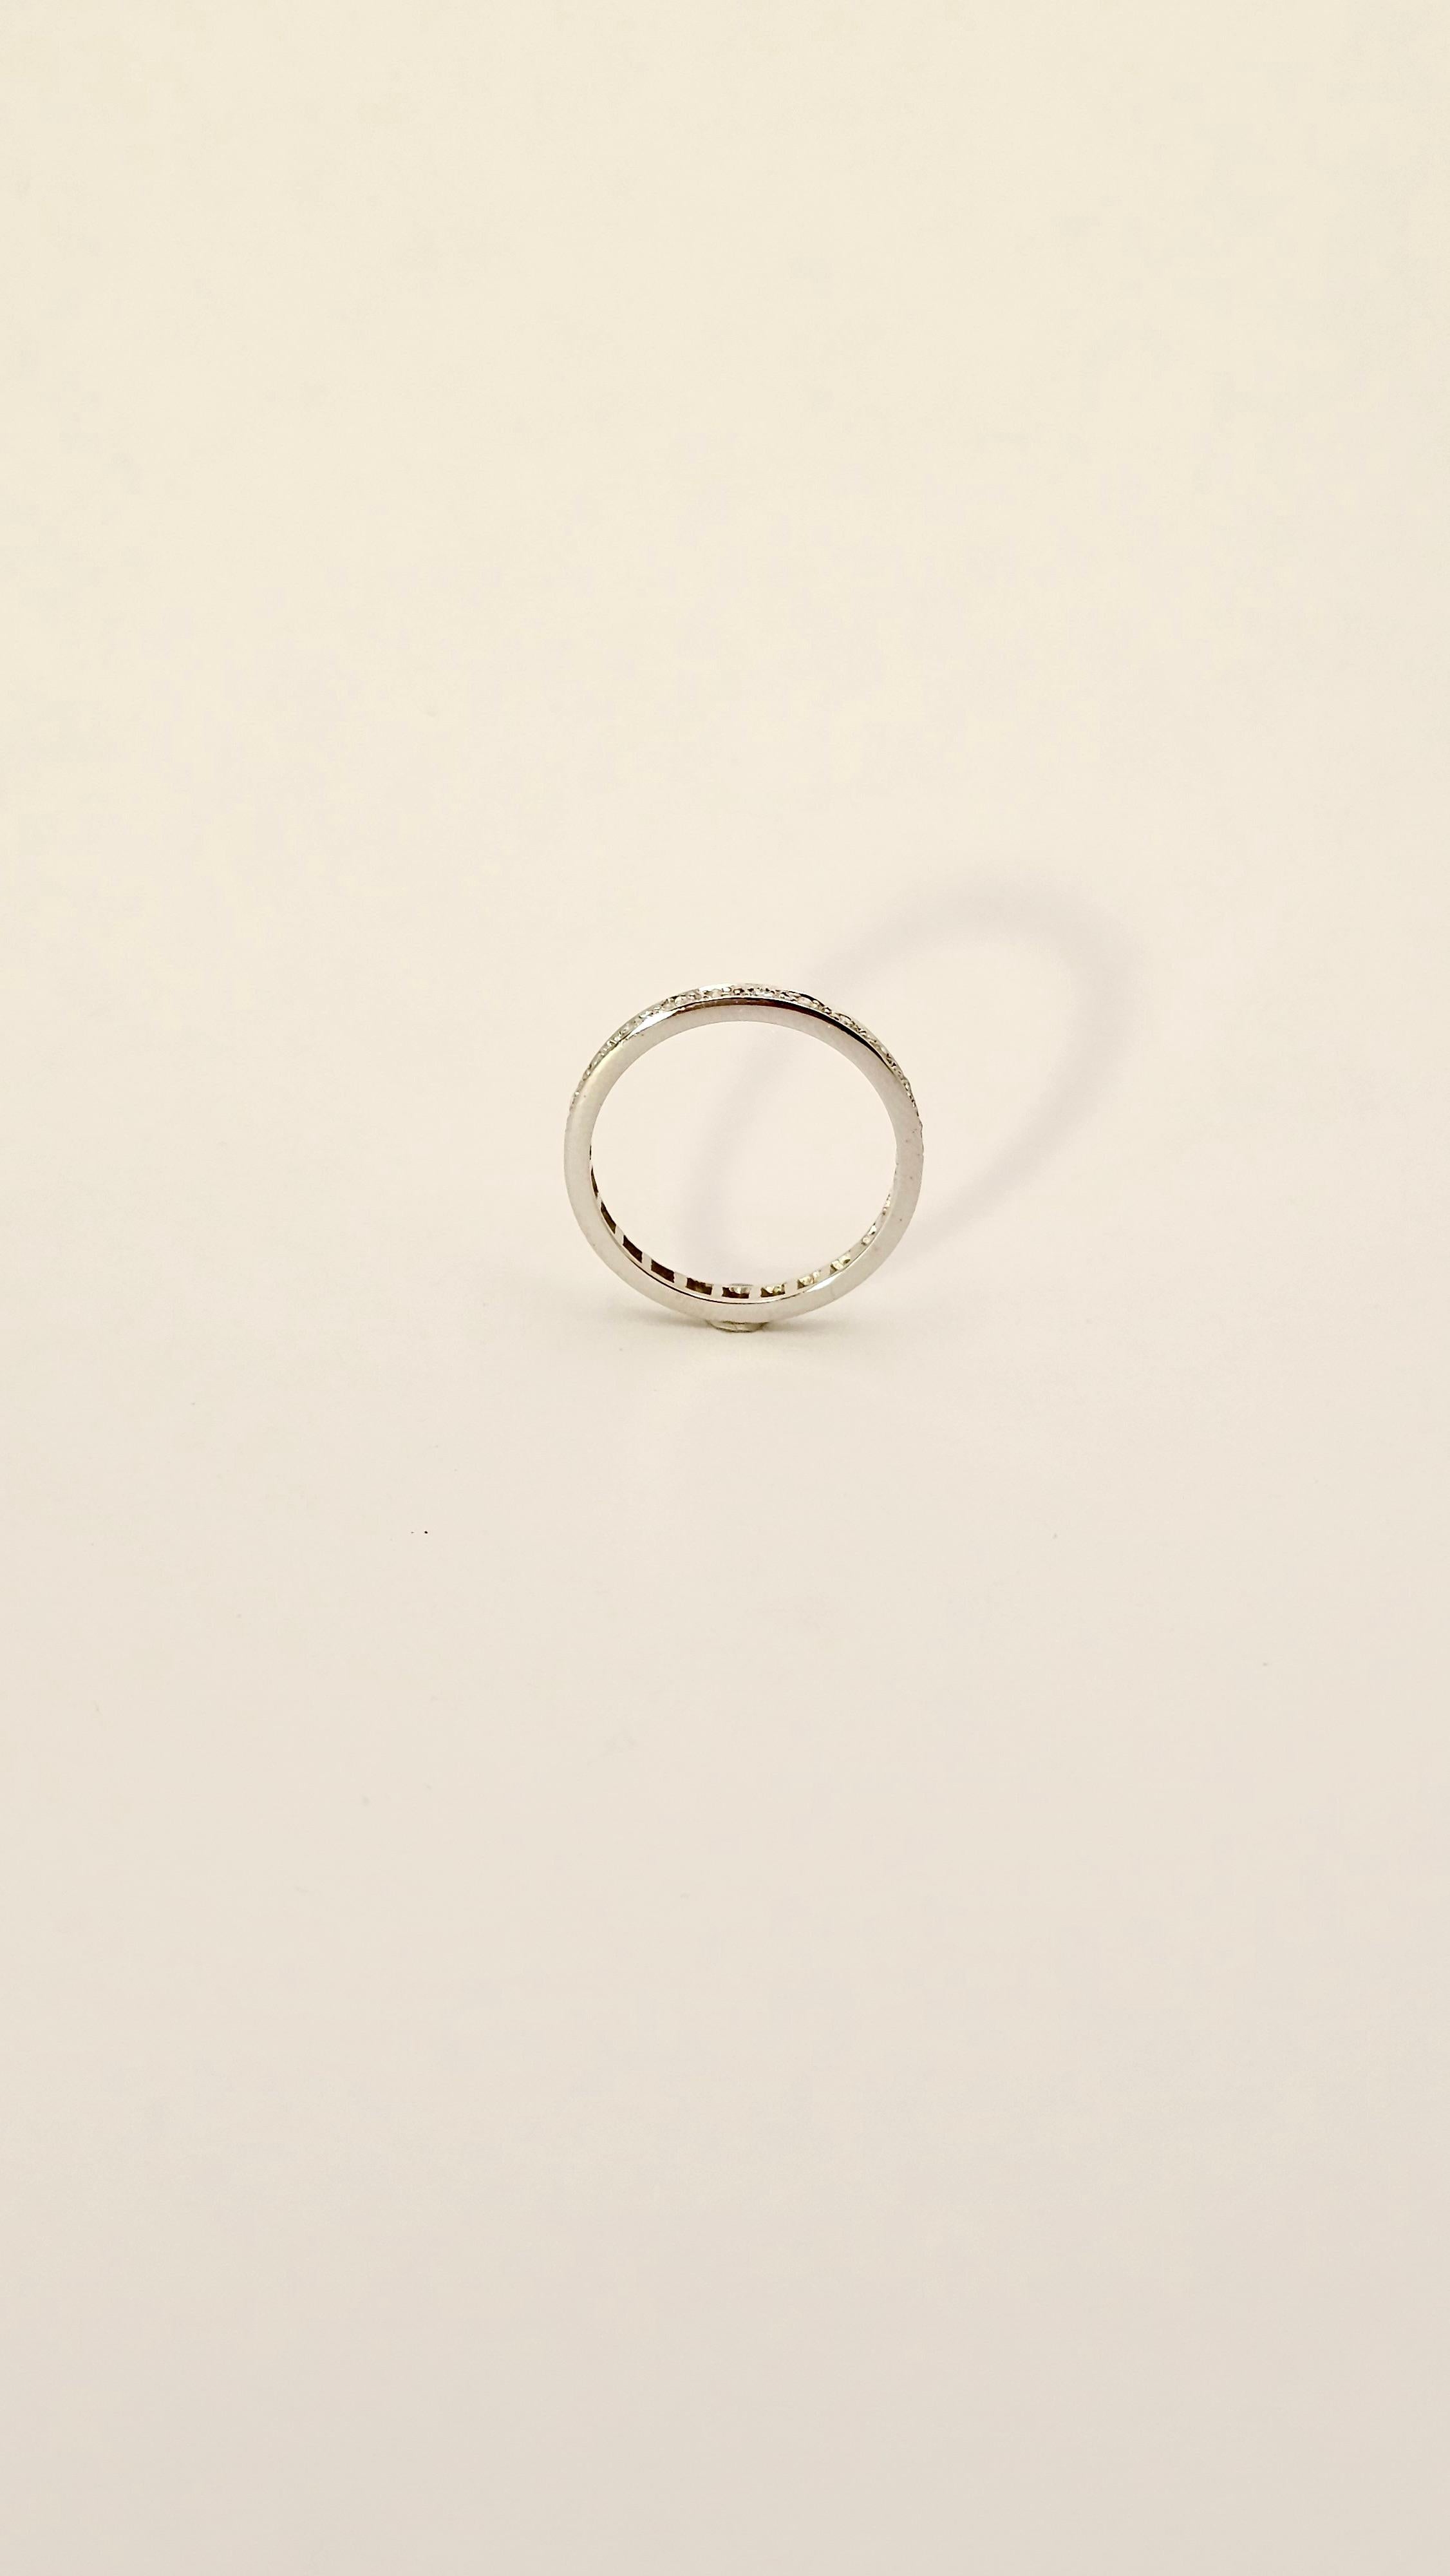 Ein klassischer Ring aus 18 Kt Weißgold mit einem Gewicht von 2,0 Gramm.
Die gesamte Oberfläche des Rings ist mit 24 Diamanten im Antikschliff mit einem Gesamtgewicht von 0,32 Karat besetzt.
Dieser Ehering ist von hervorragender handwerklicher